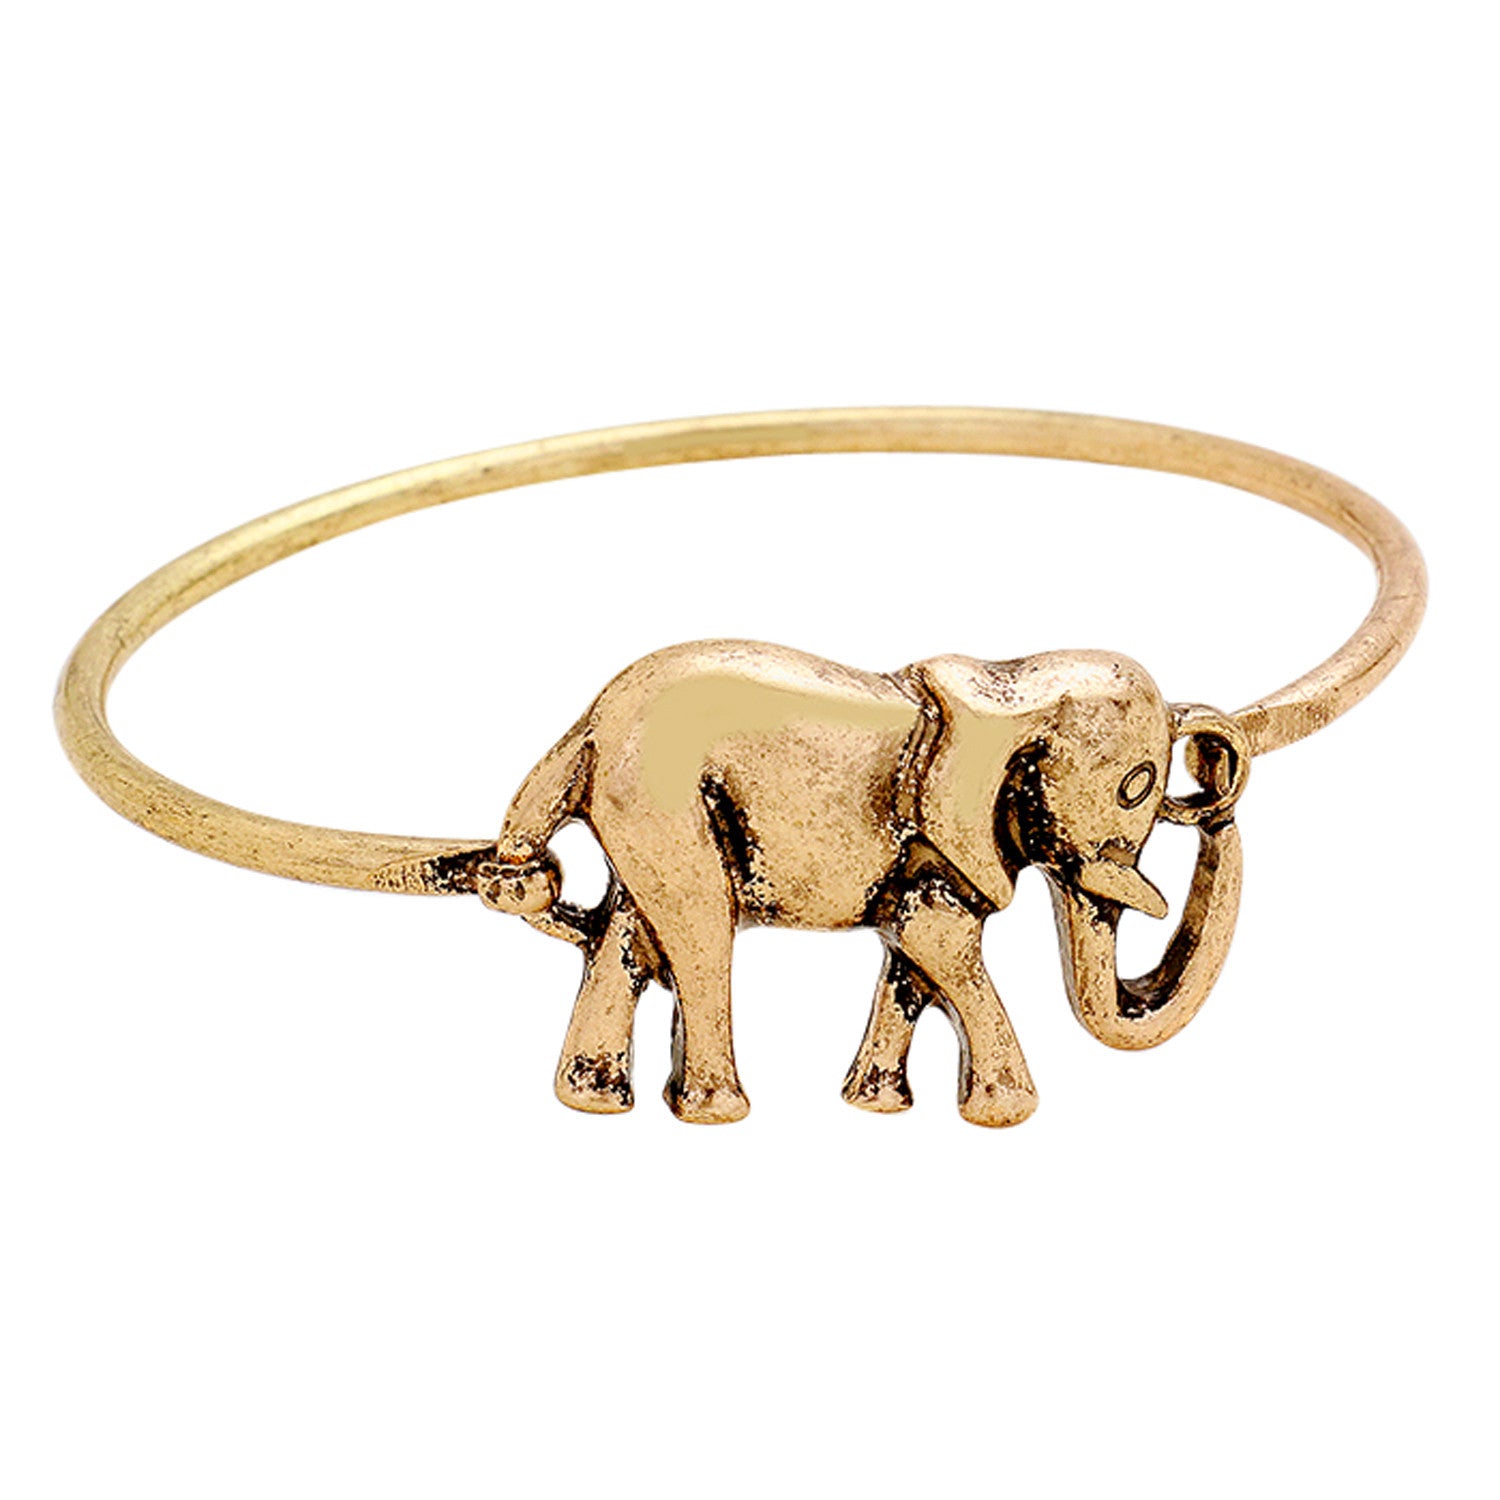 5 of 6: Delta Sigma Theta Inspired Elephant Hook Bracelet (Gold Tone)